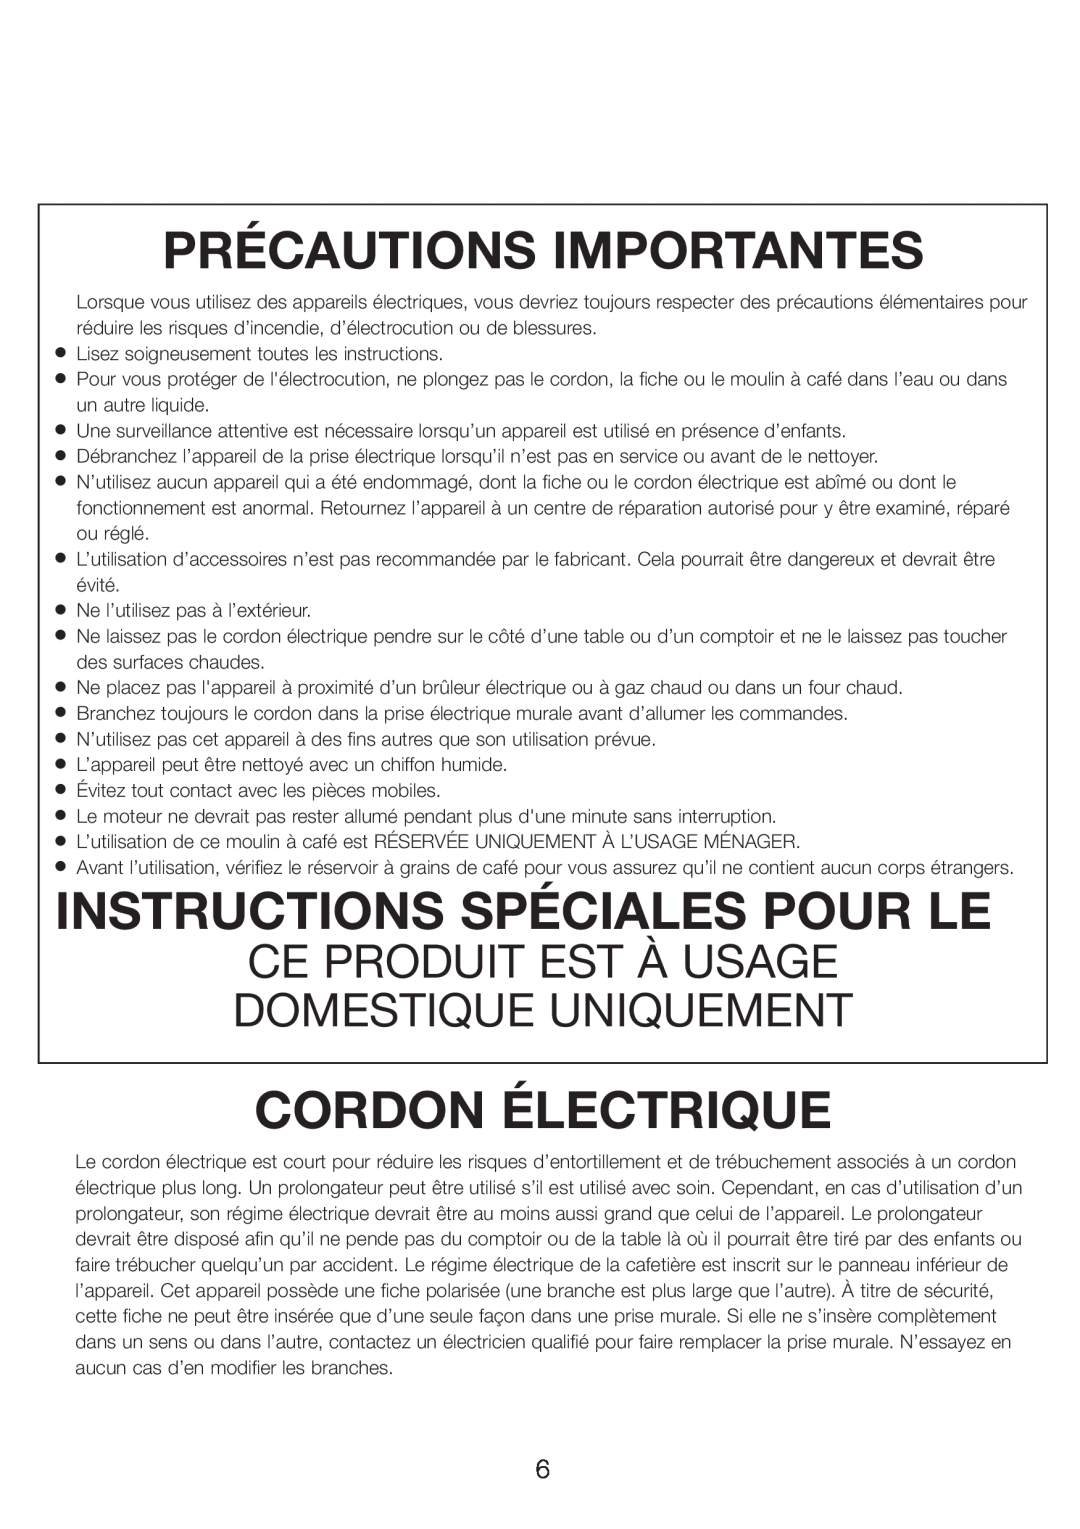 DeLonghi DCG601, DCG600 manual Précautions Importantes, Instructions Spéciales Pour Le, Cordon Électrique 